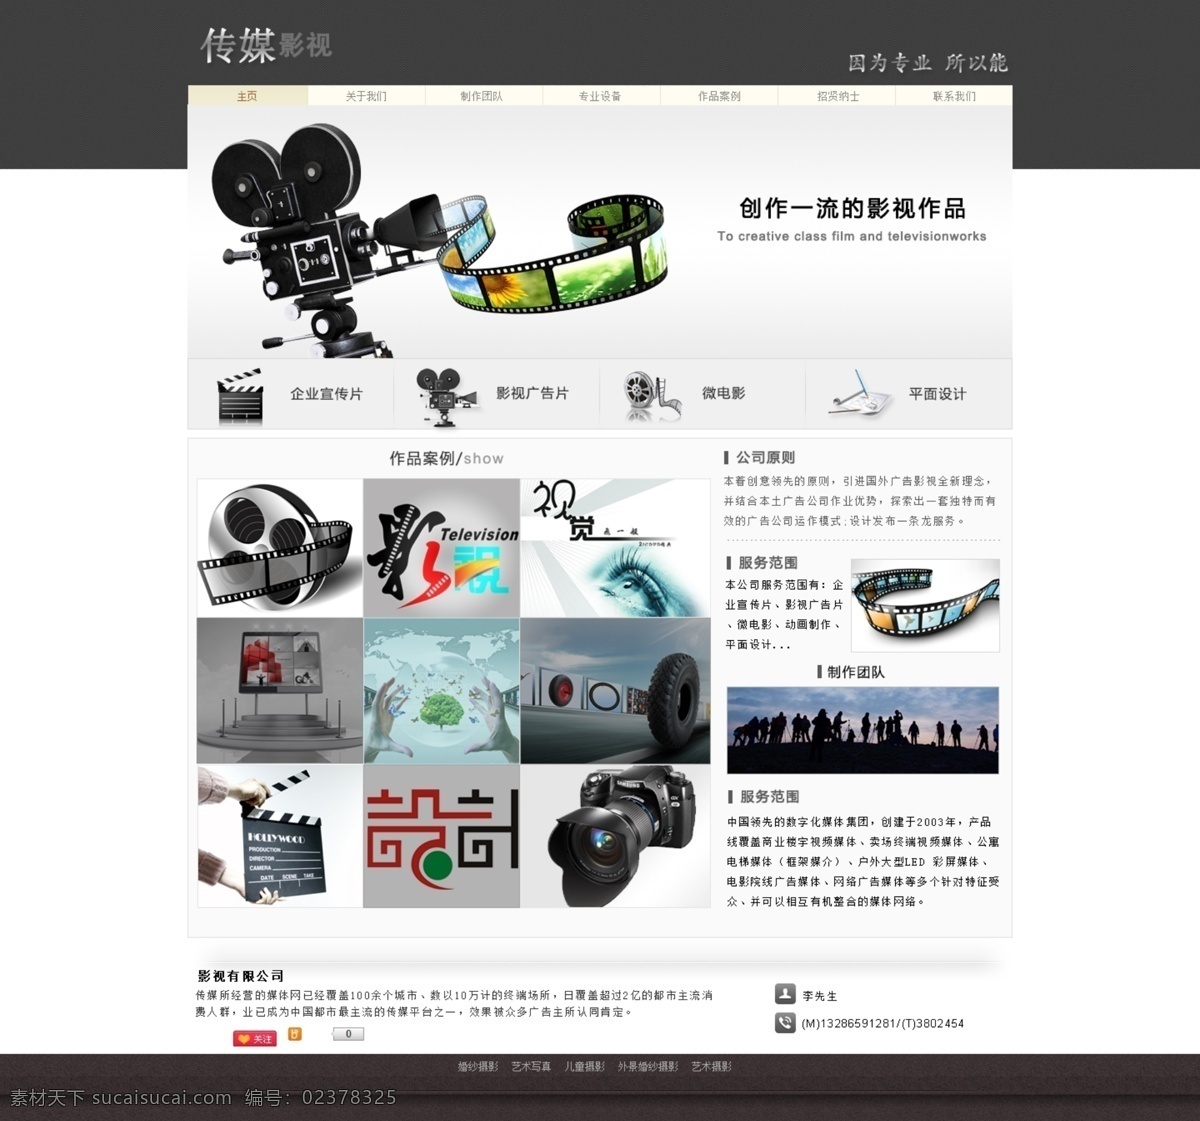 影视 广告片 类 网站 模版下载 企业宣传片 影视广告片 微电影 动画制作 平面设计 web 界面设计 中文模板